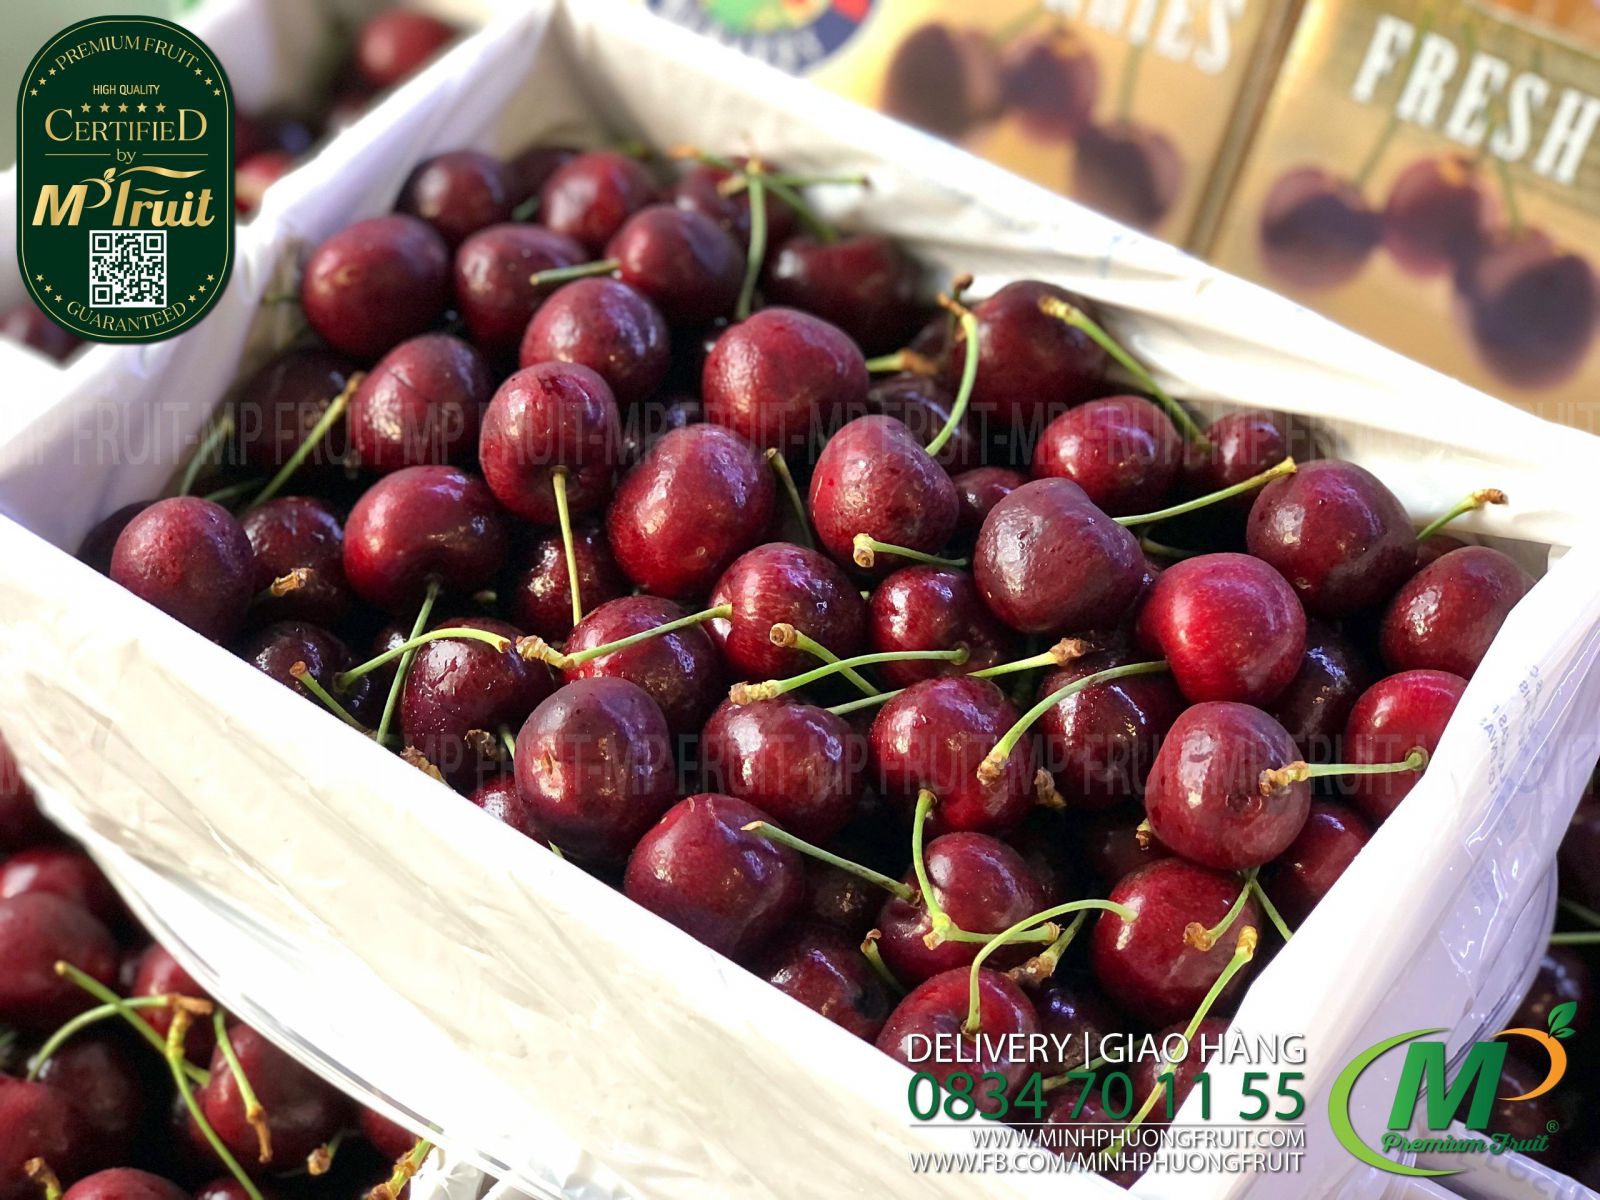 Cherry Đỏ Tasmania Úc Size 32-34 | Hansen Orchards thương hiệu lâu năm của Úc tại MP Fruit